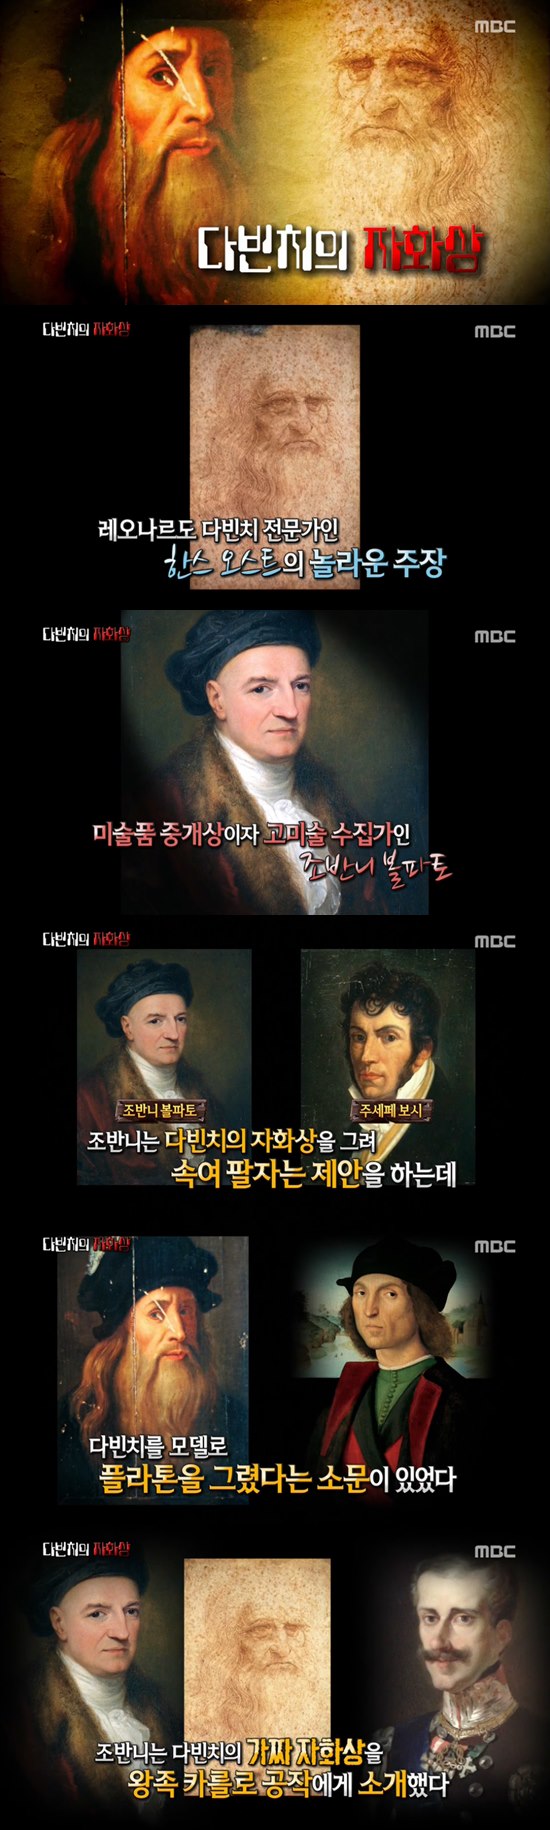 '서프라이즈' 레오나르도 다빈치의 자화상 ⓒ MBC 방송화면